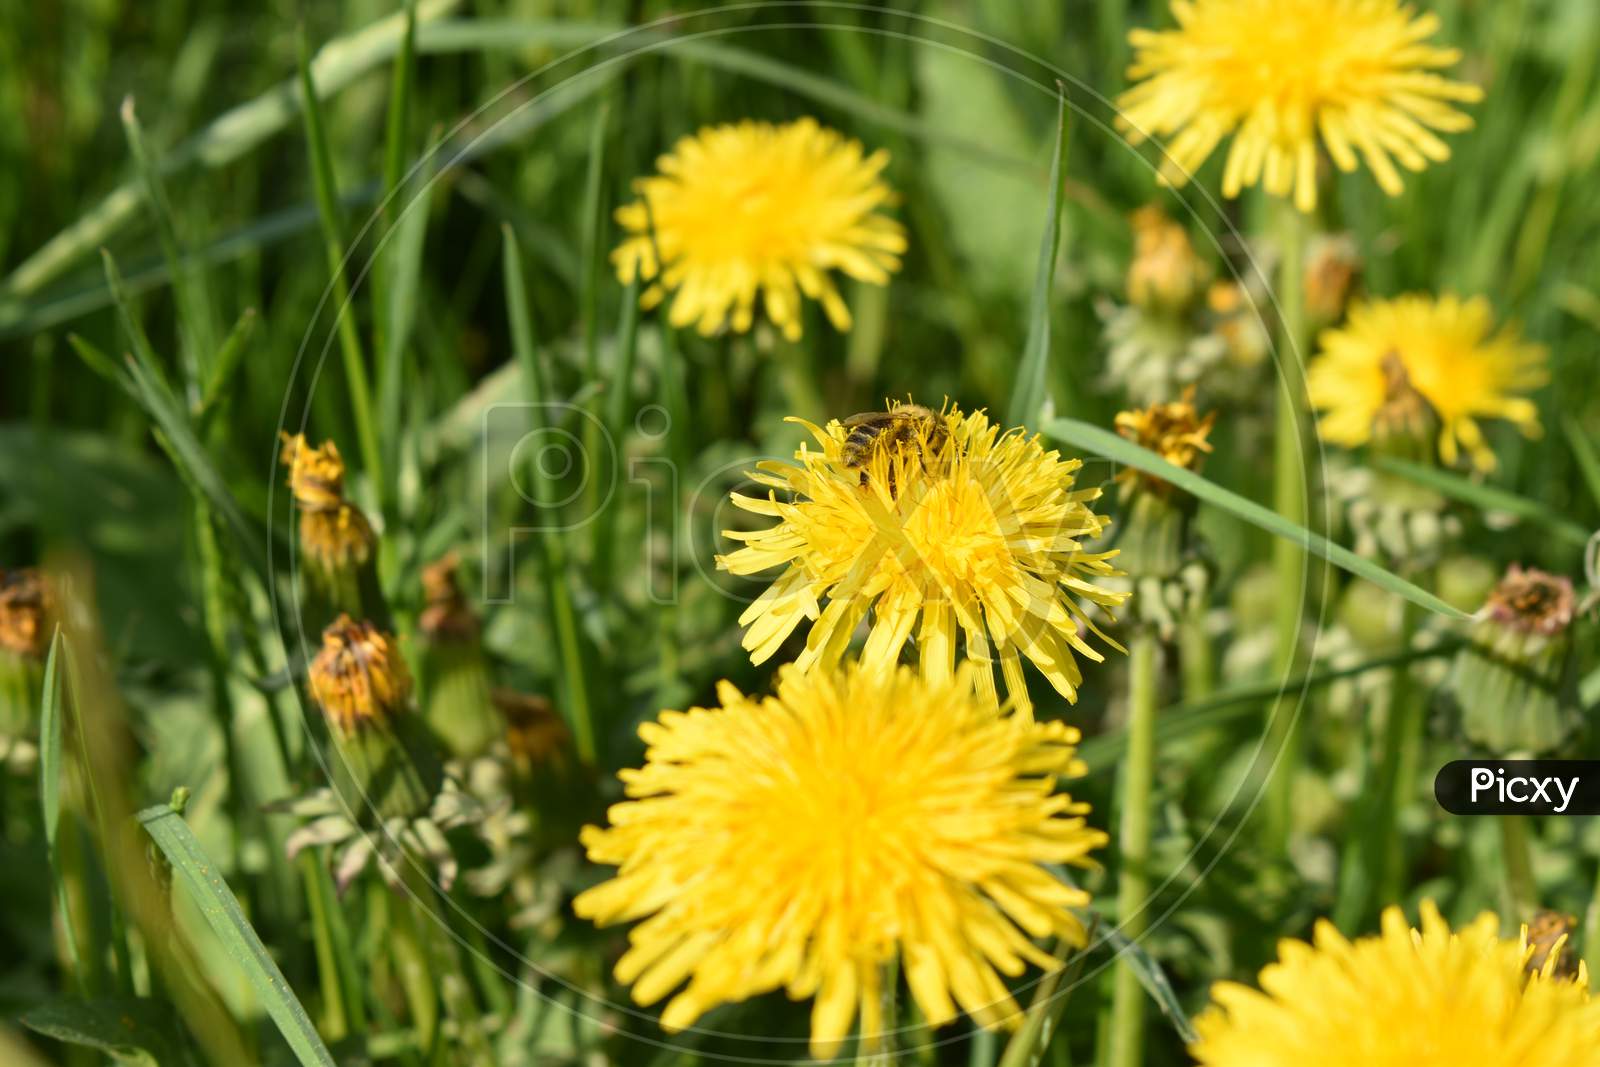 Yellow dandelion in a green field